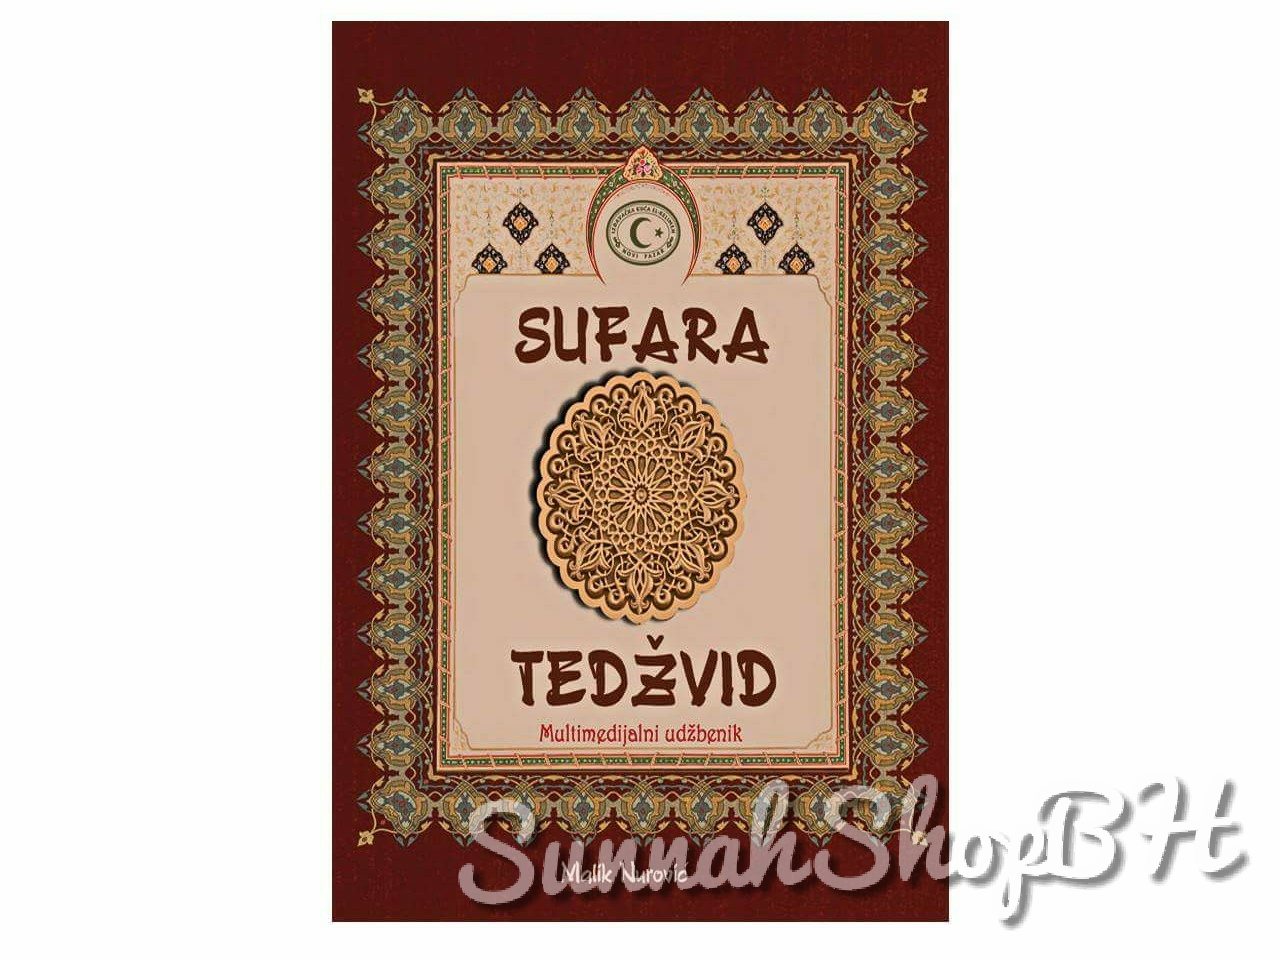 Islamske knjige - Sufara i tedžvid